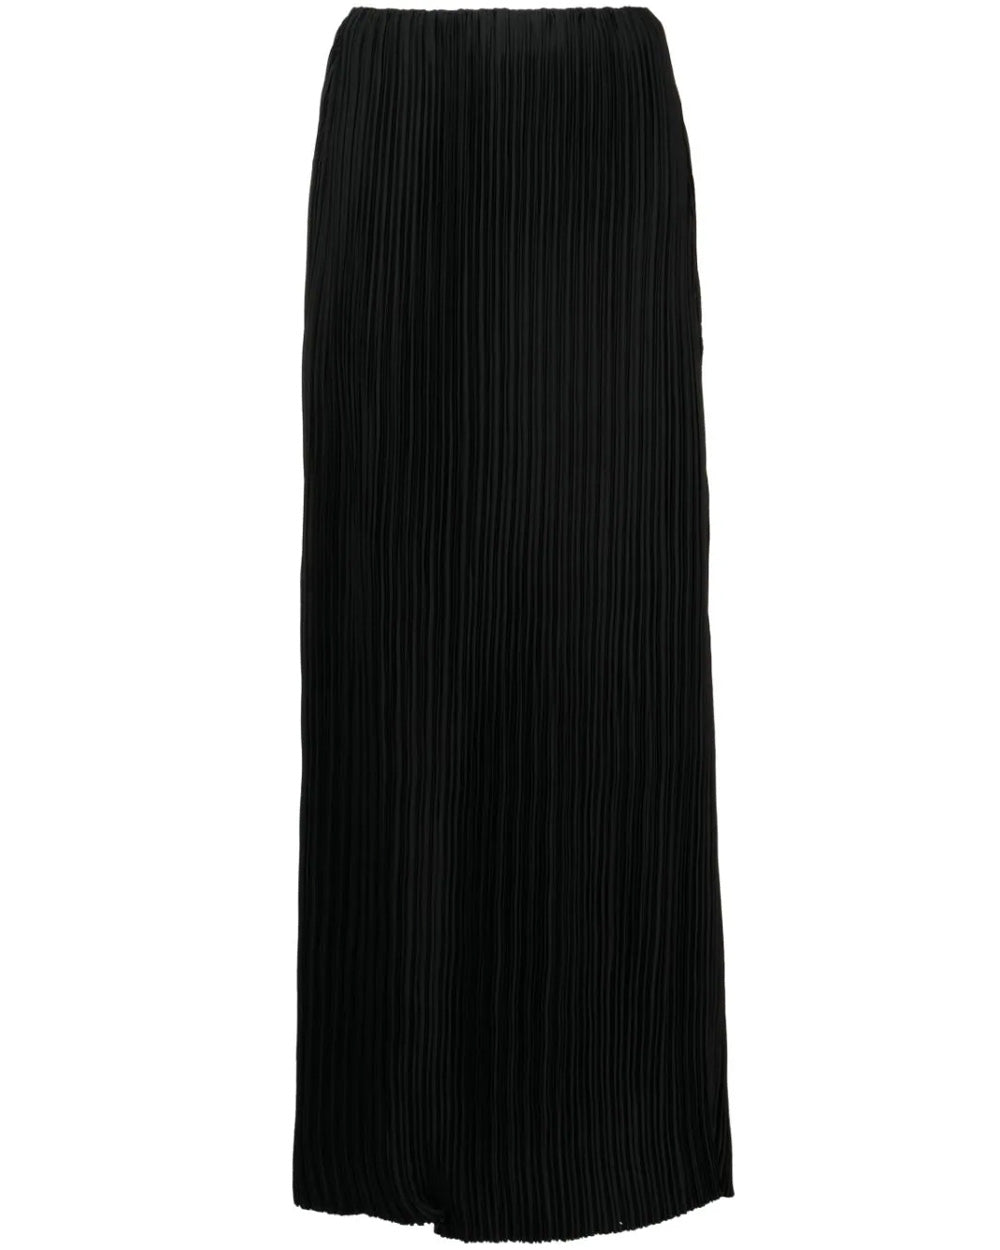 Black Ziara Skirt